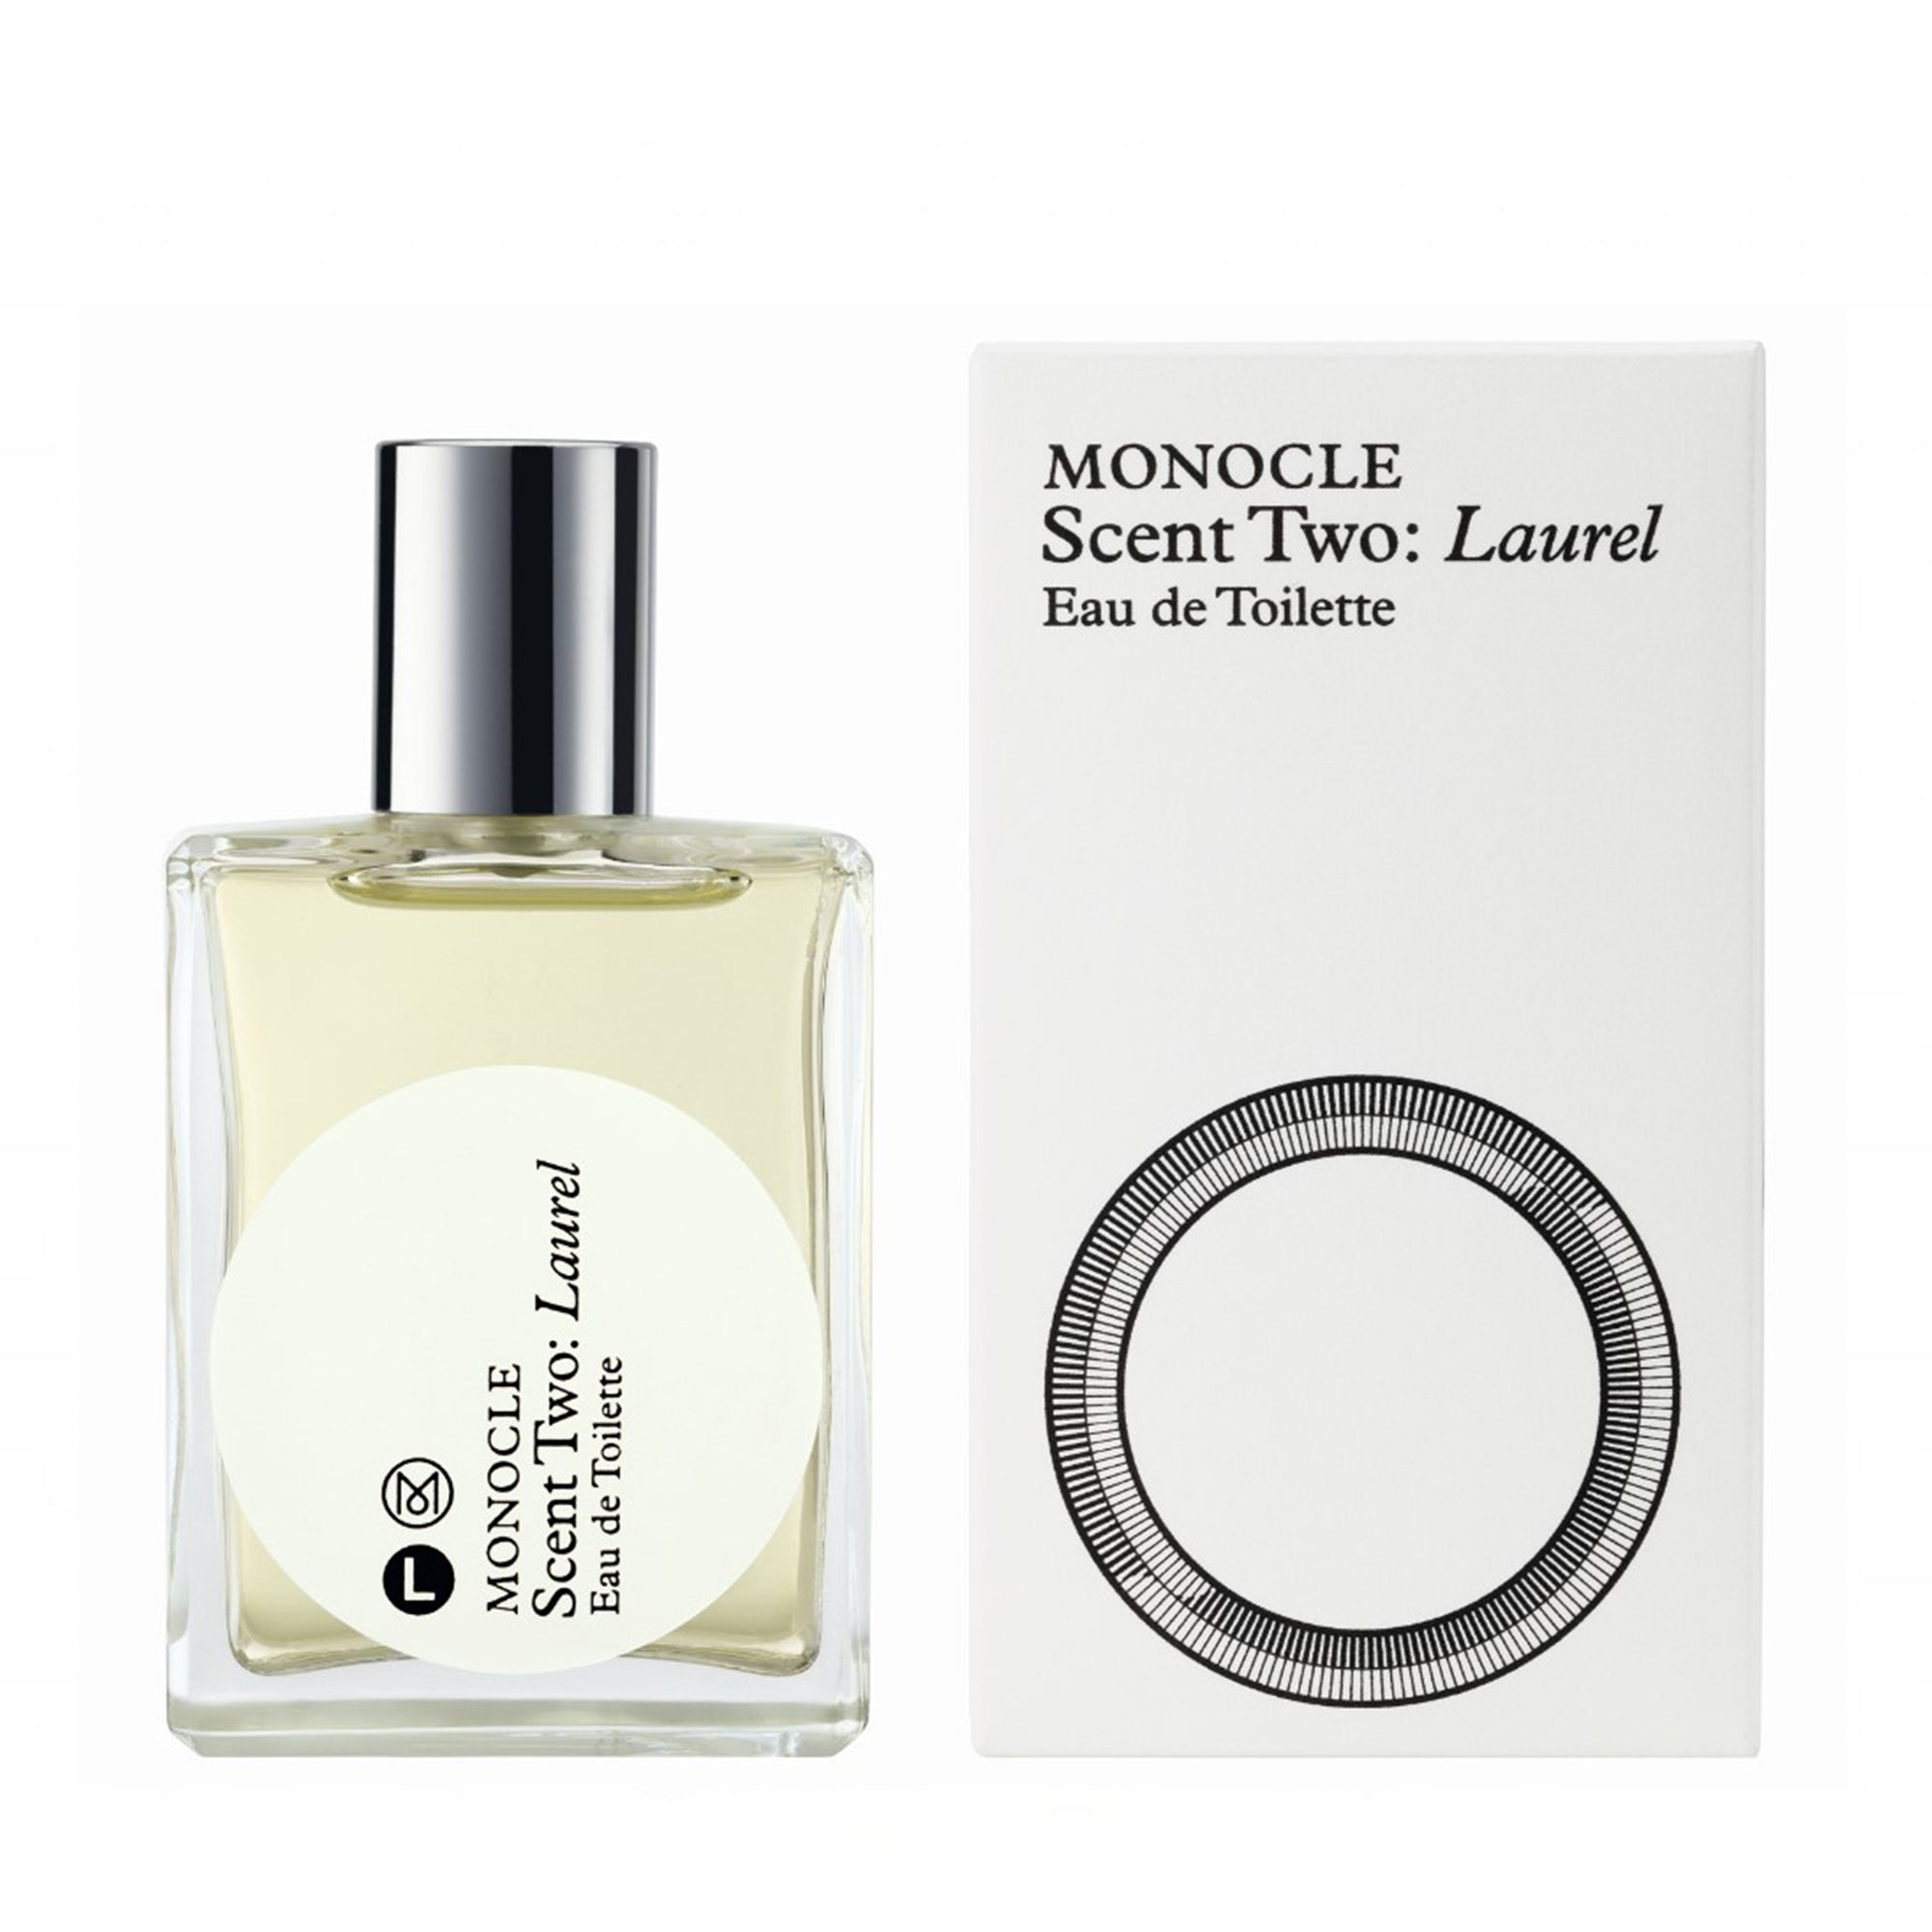 CDG Parfum - Monocle Scent Two: Laurel Eau de Toilette - (50ml natural spray) view 2